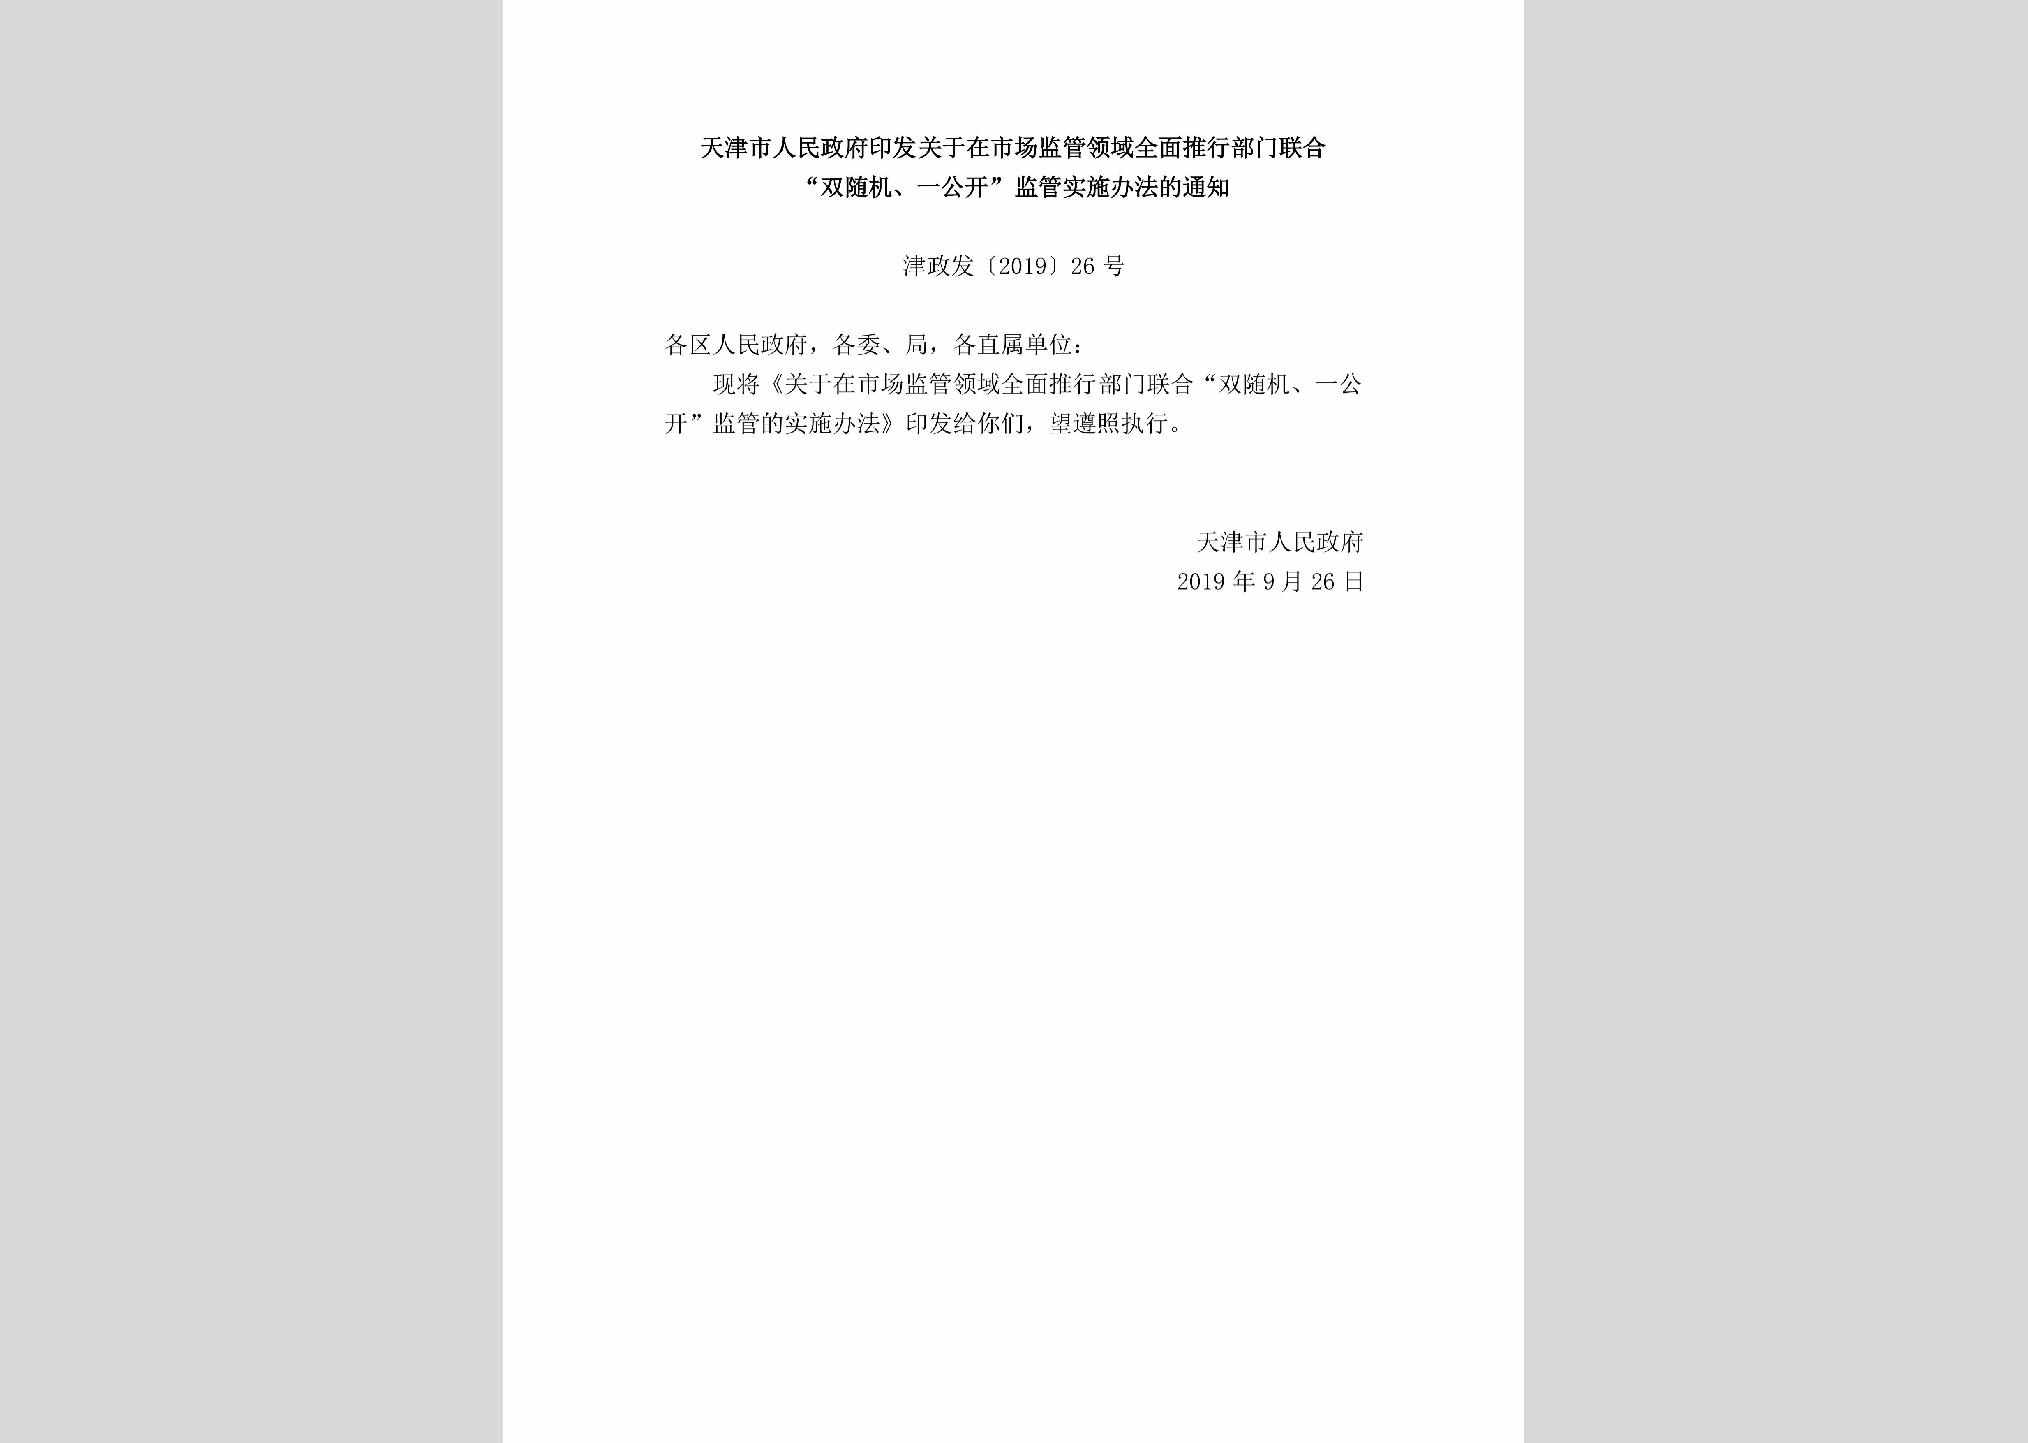 津政发[2019]26号：天津市人民政府印发关于在市场监管领域全面推行部门联合“双随机、一公开”监管实施办法的通知